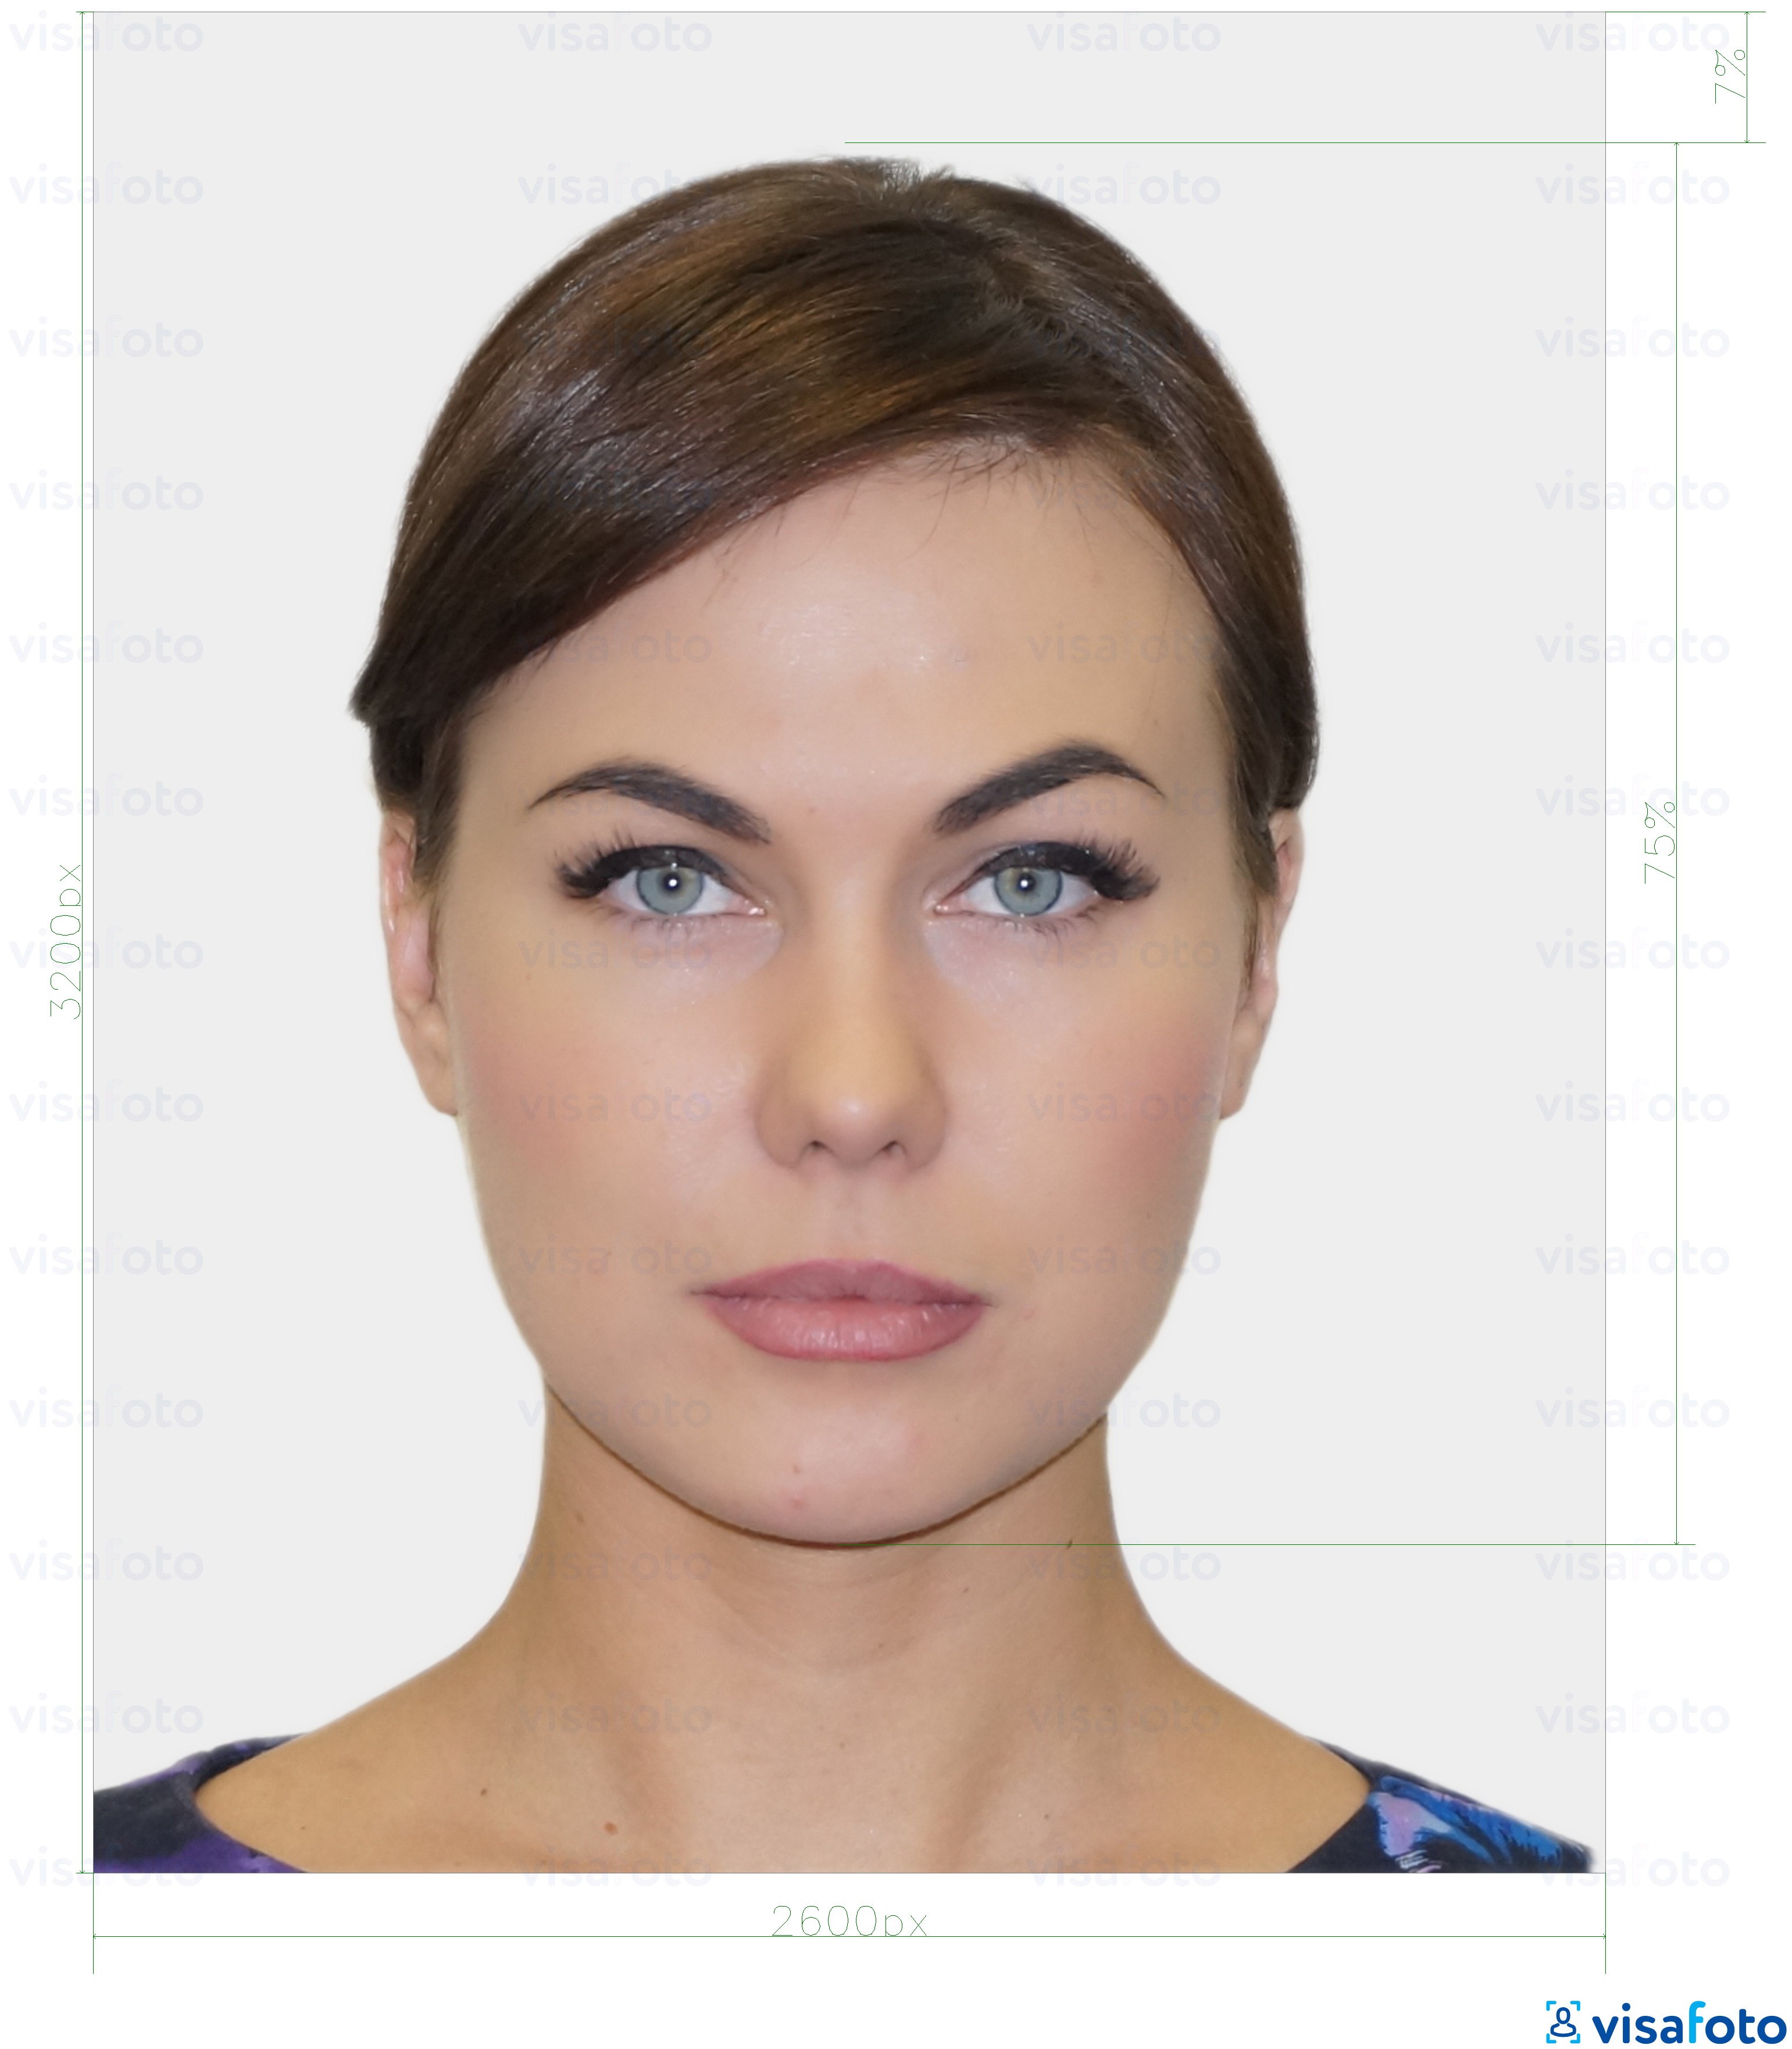 Приклад фотографії для Естонська резидентна цифрова ідентифікаційна картка 1300x1600 пікселів з точними специфікаціями розміру